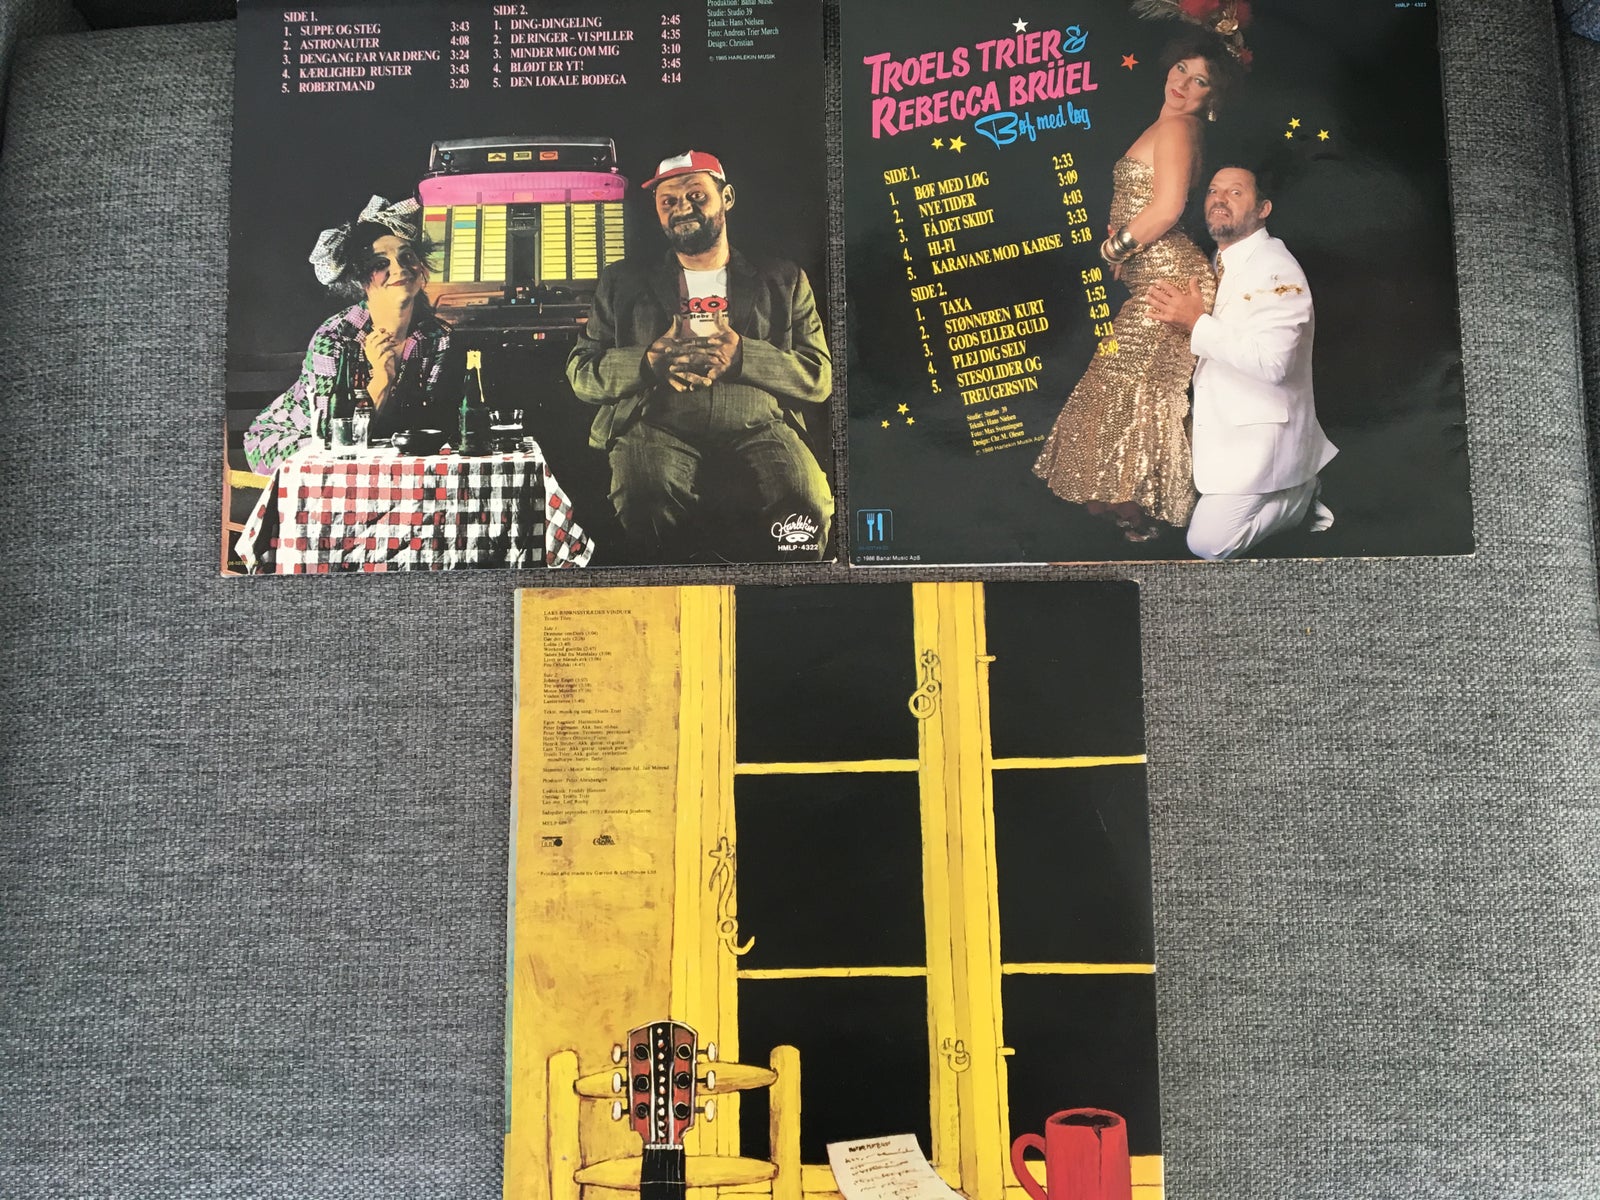 LP, Troels Trier og Rebecca Brüel, Bøf med Løg mm. (3 LP)